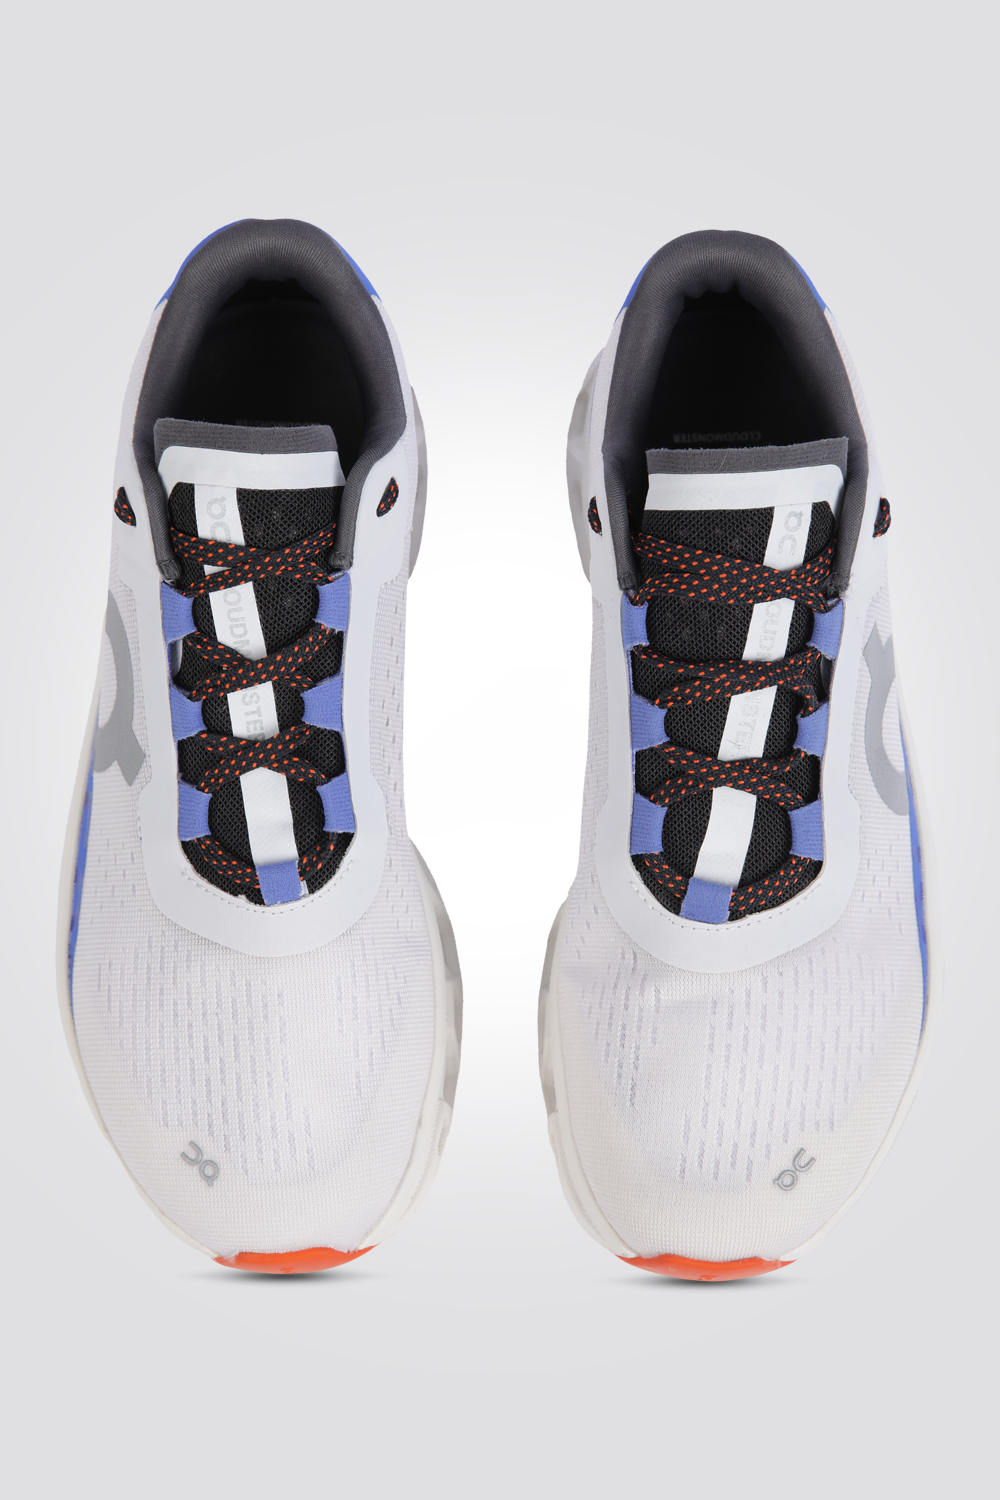 נעלי ספורט לגברים Cloudmonster Frost בצבע לבן וכחול